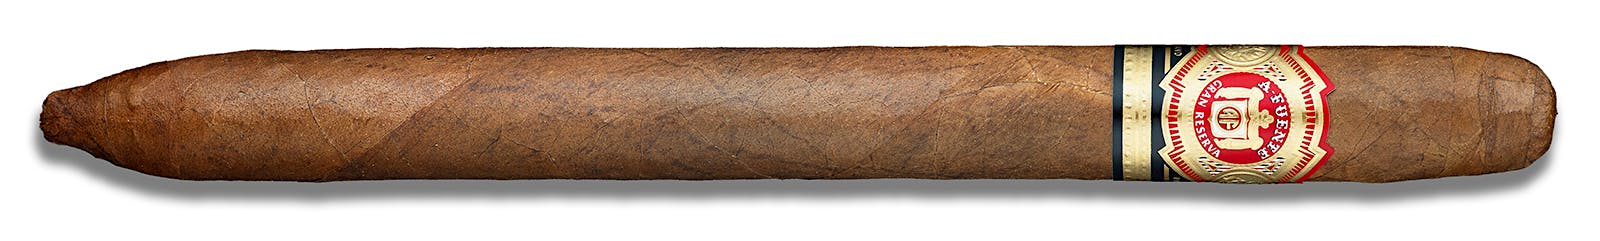 Arturo Fuente Hemingway Masterpiece cigar